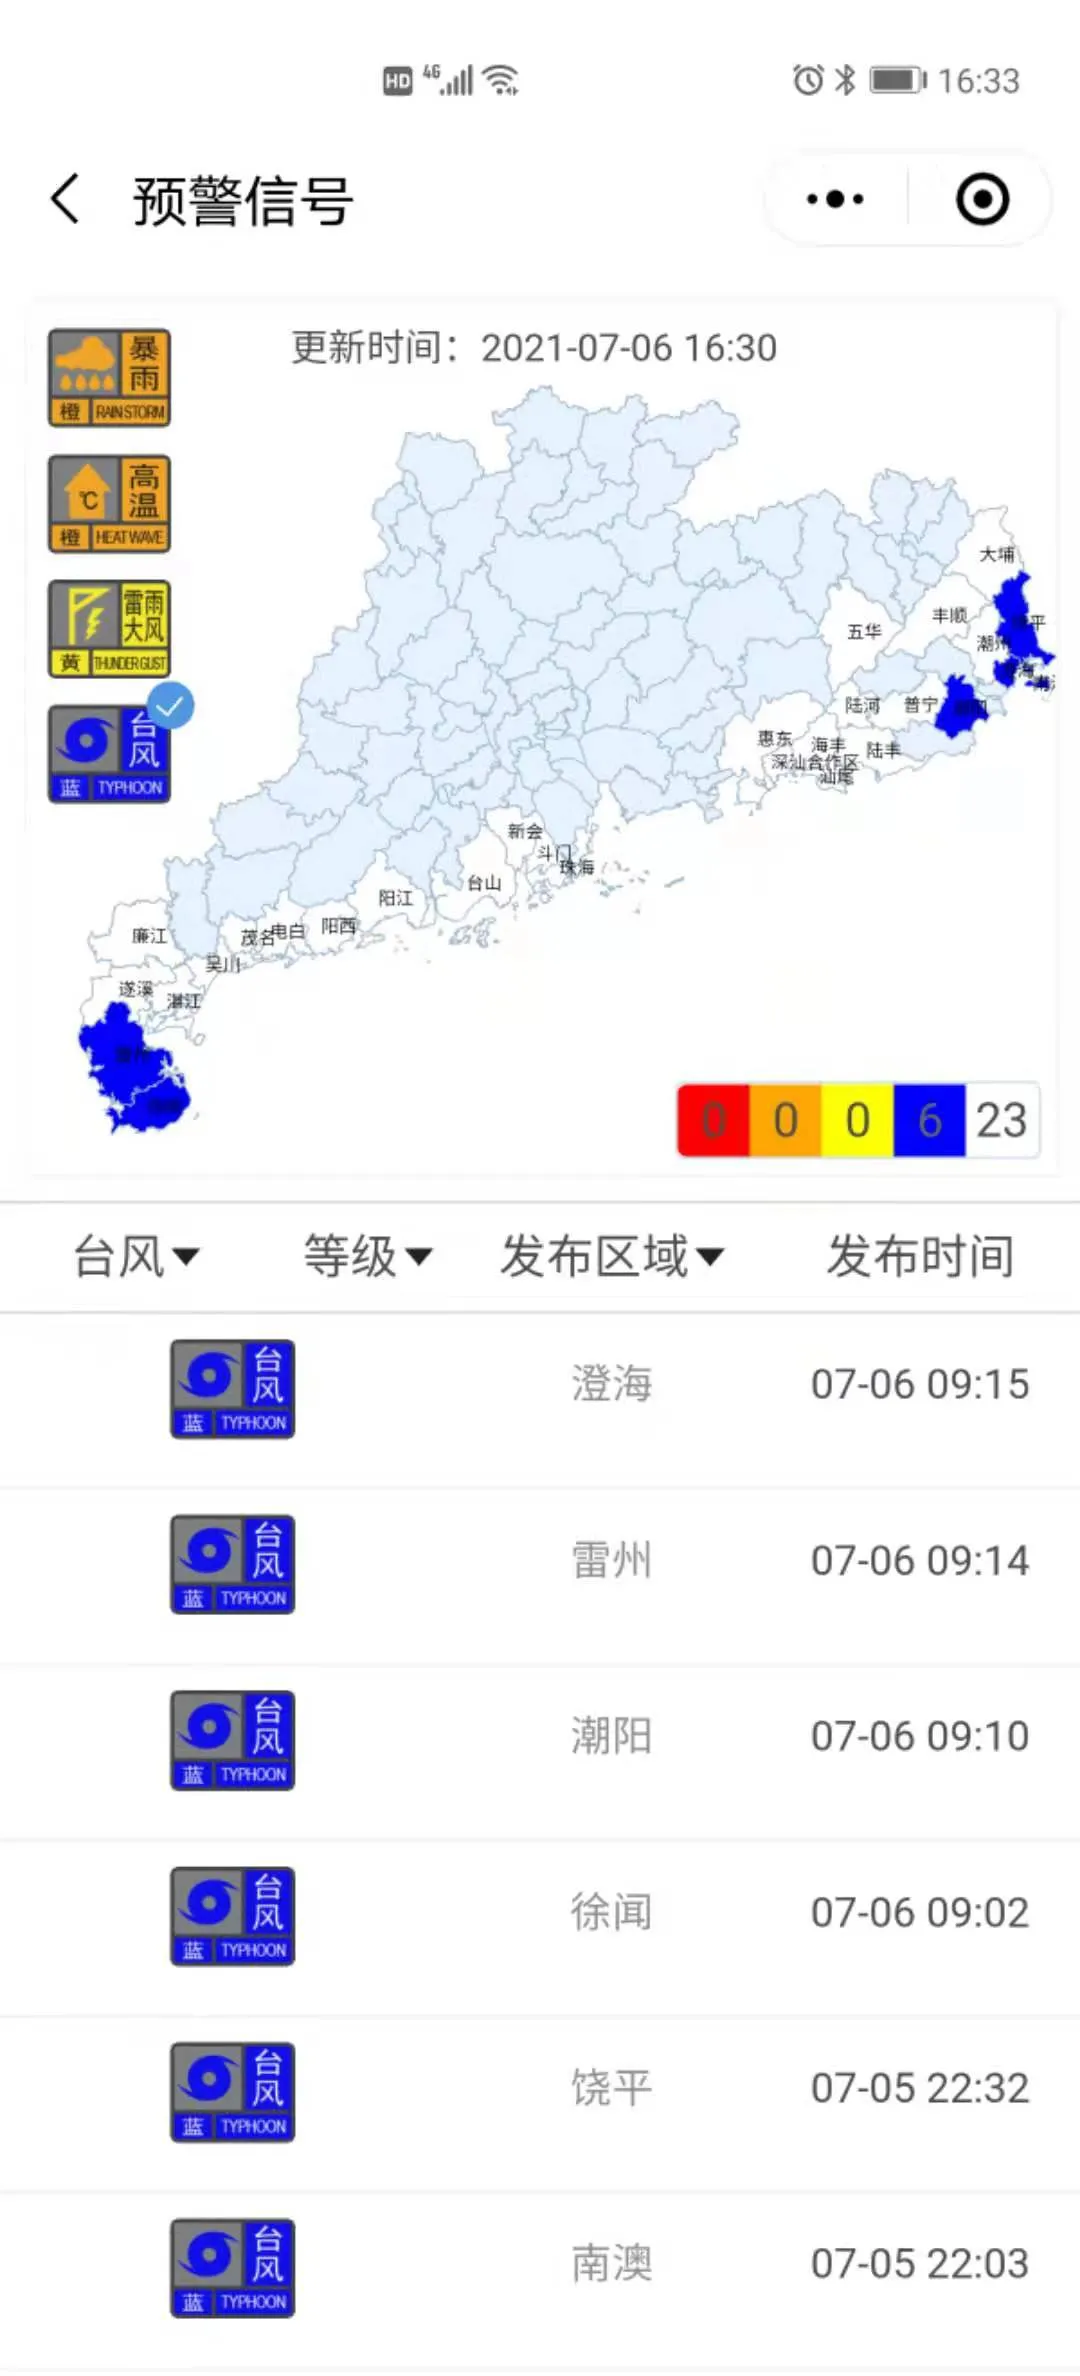 广东持续性暴雨进入第四天 暴雨黄色预警继续发布-中国气象局政府门户网站